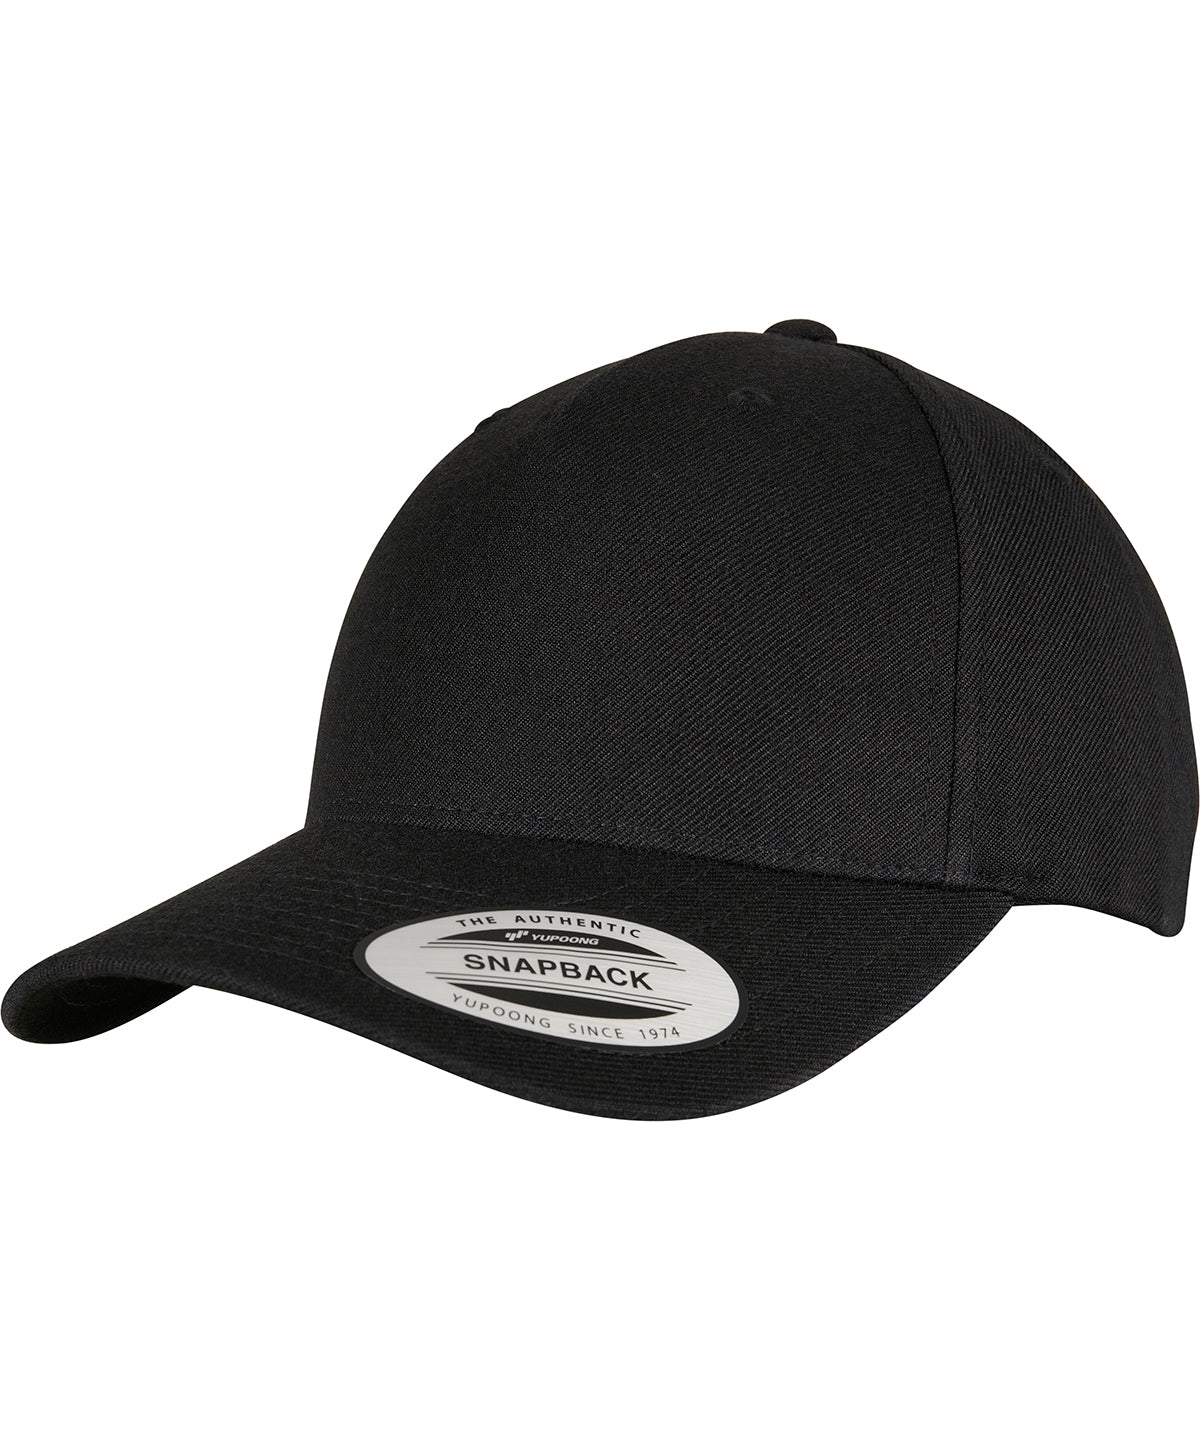 YP classics 5-panel premium curved visor snapback cap (5789M)